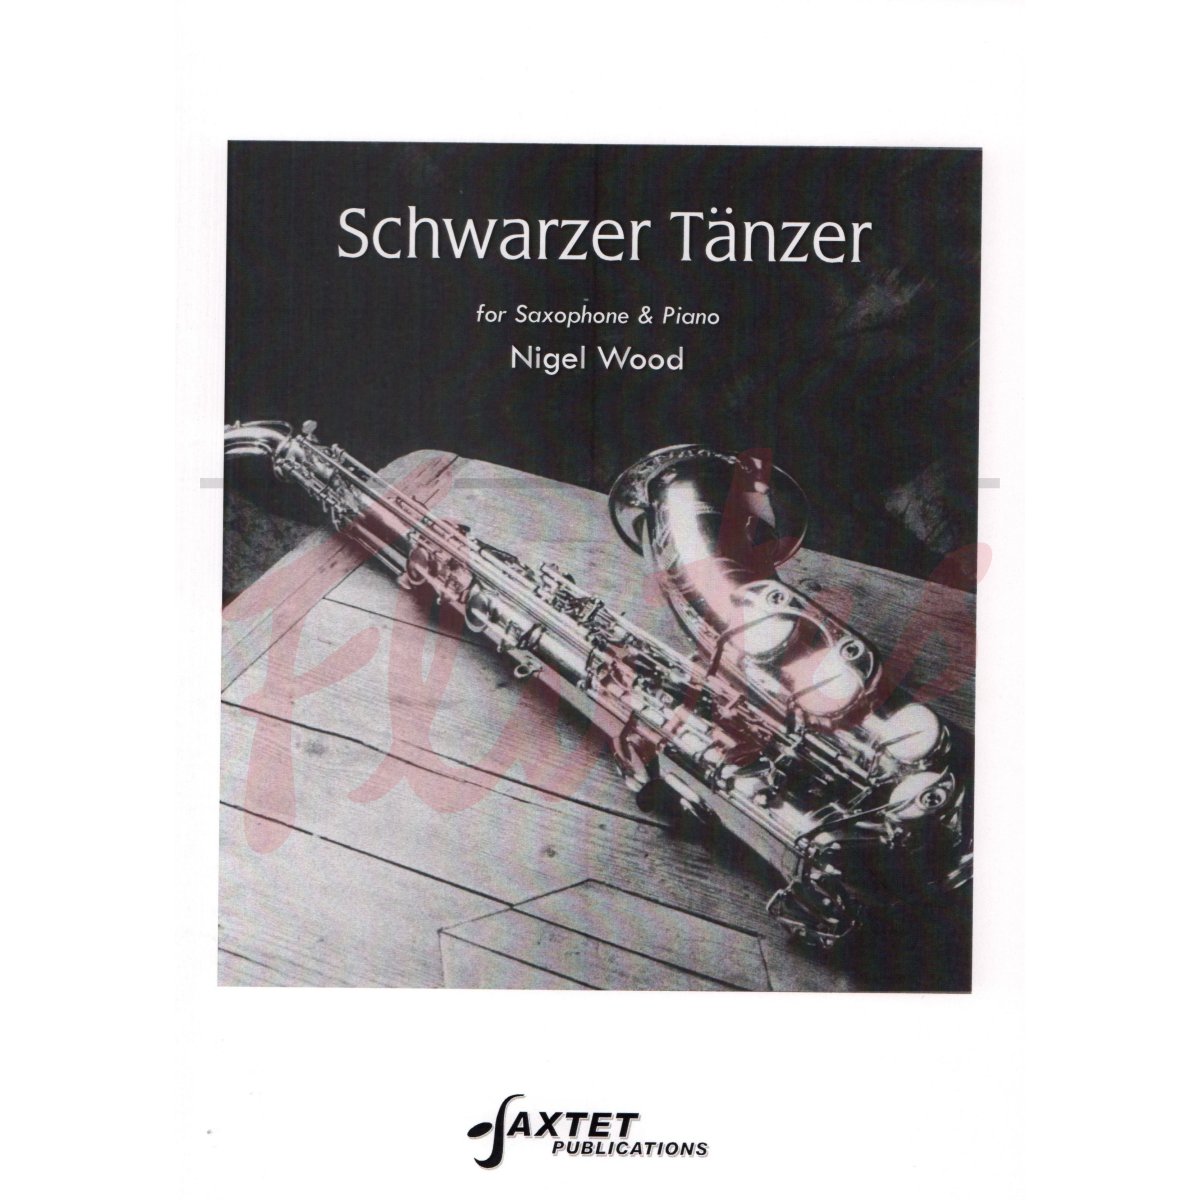 Schwarzer Tänzer for Saxophone and Piano